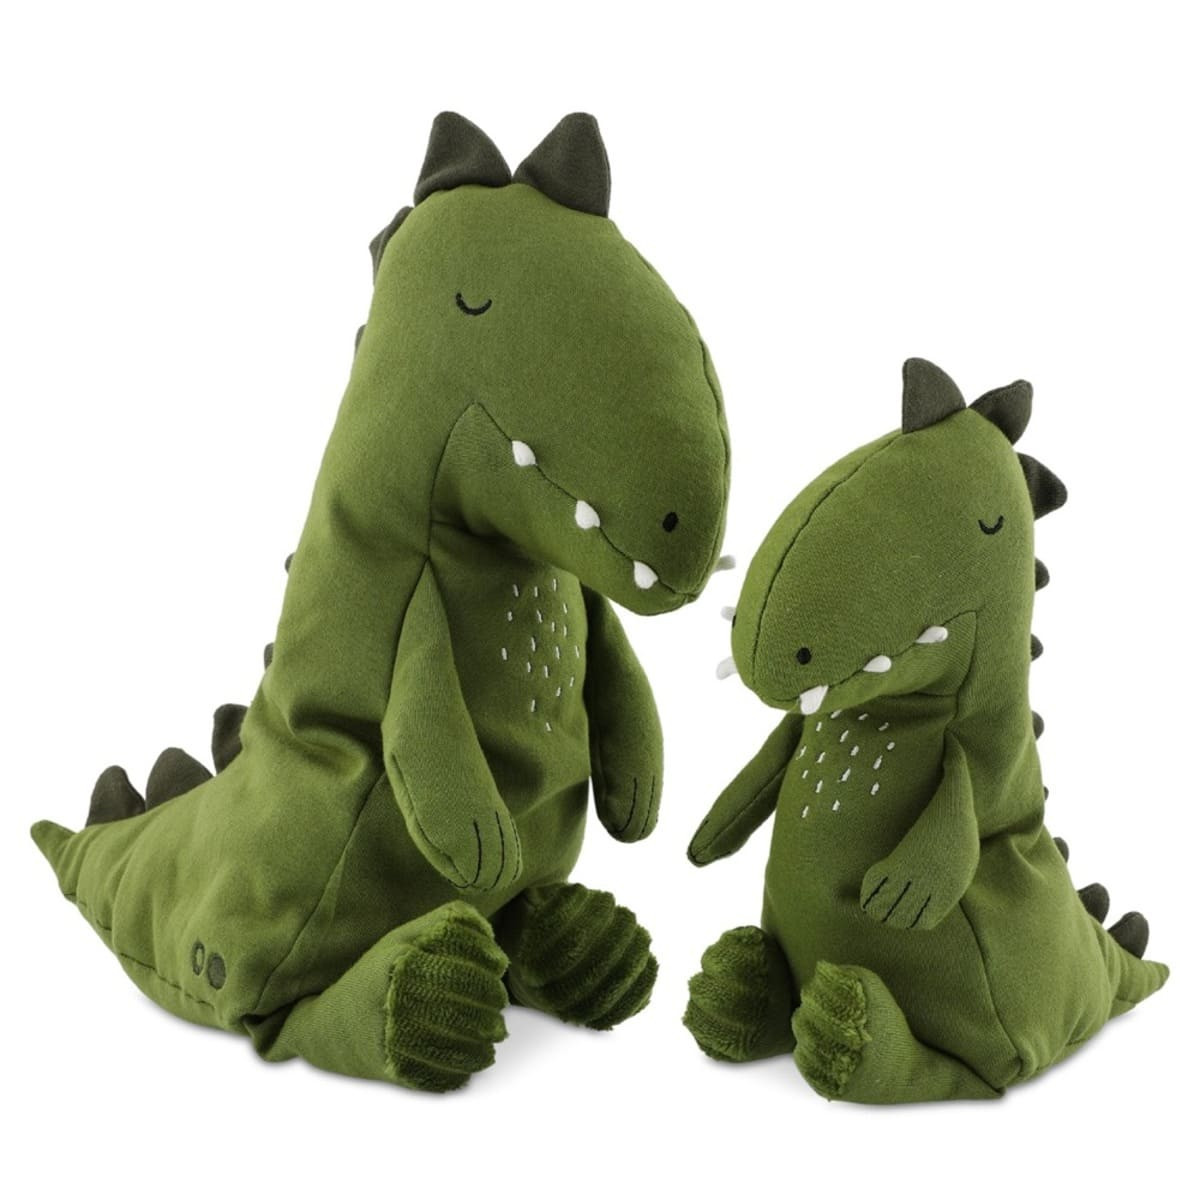 Kuscheltier Baby Dino Trixie, Kuscheltier personalisiert, Dino Stofftier Baby grün groß